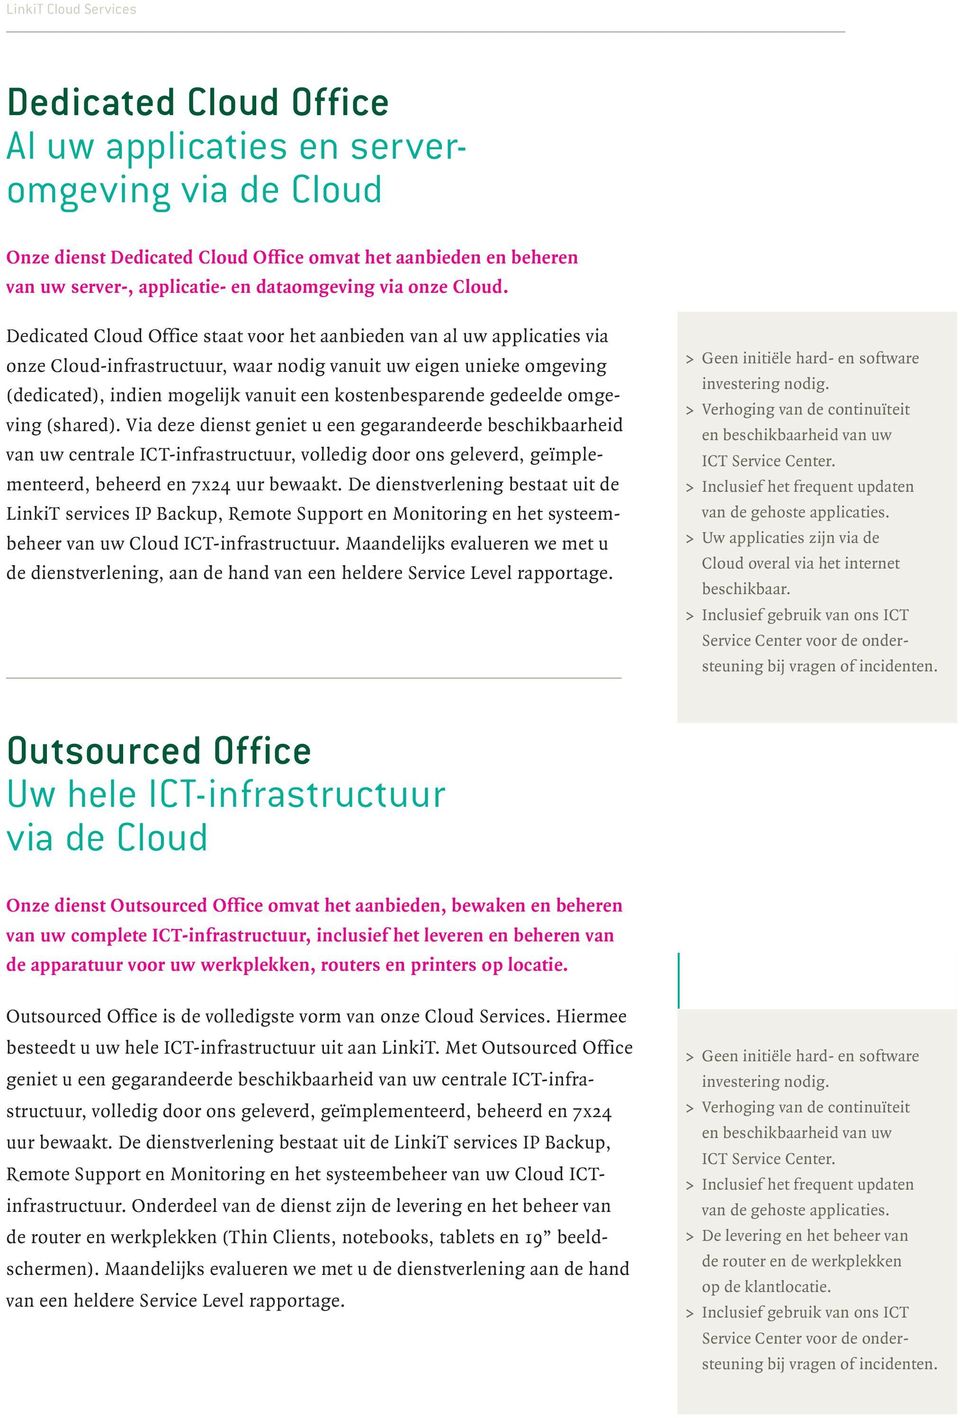 Dedicated Cloud Office staat voor het aanbieden van al uw applicaties via onze Cloud-infrastructuur, waar nodig vanuit uw eigen unieke omgeving (dedicated), indien mogelijk vanuit een